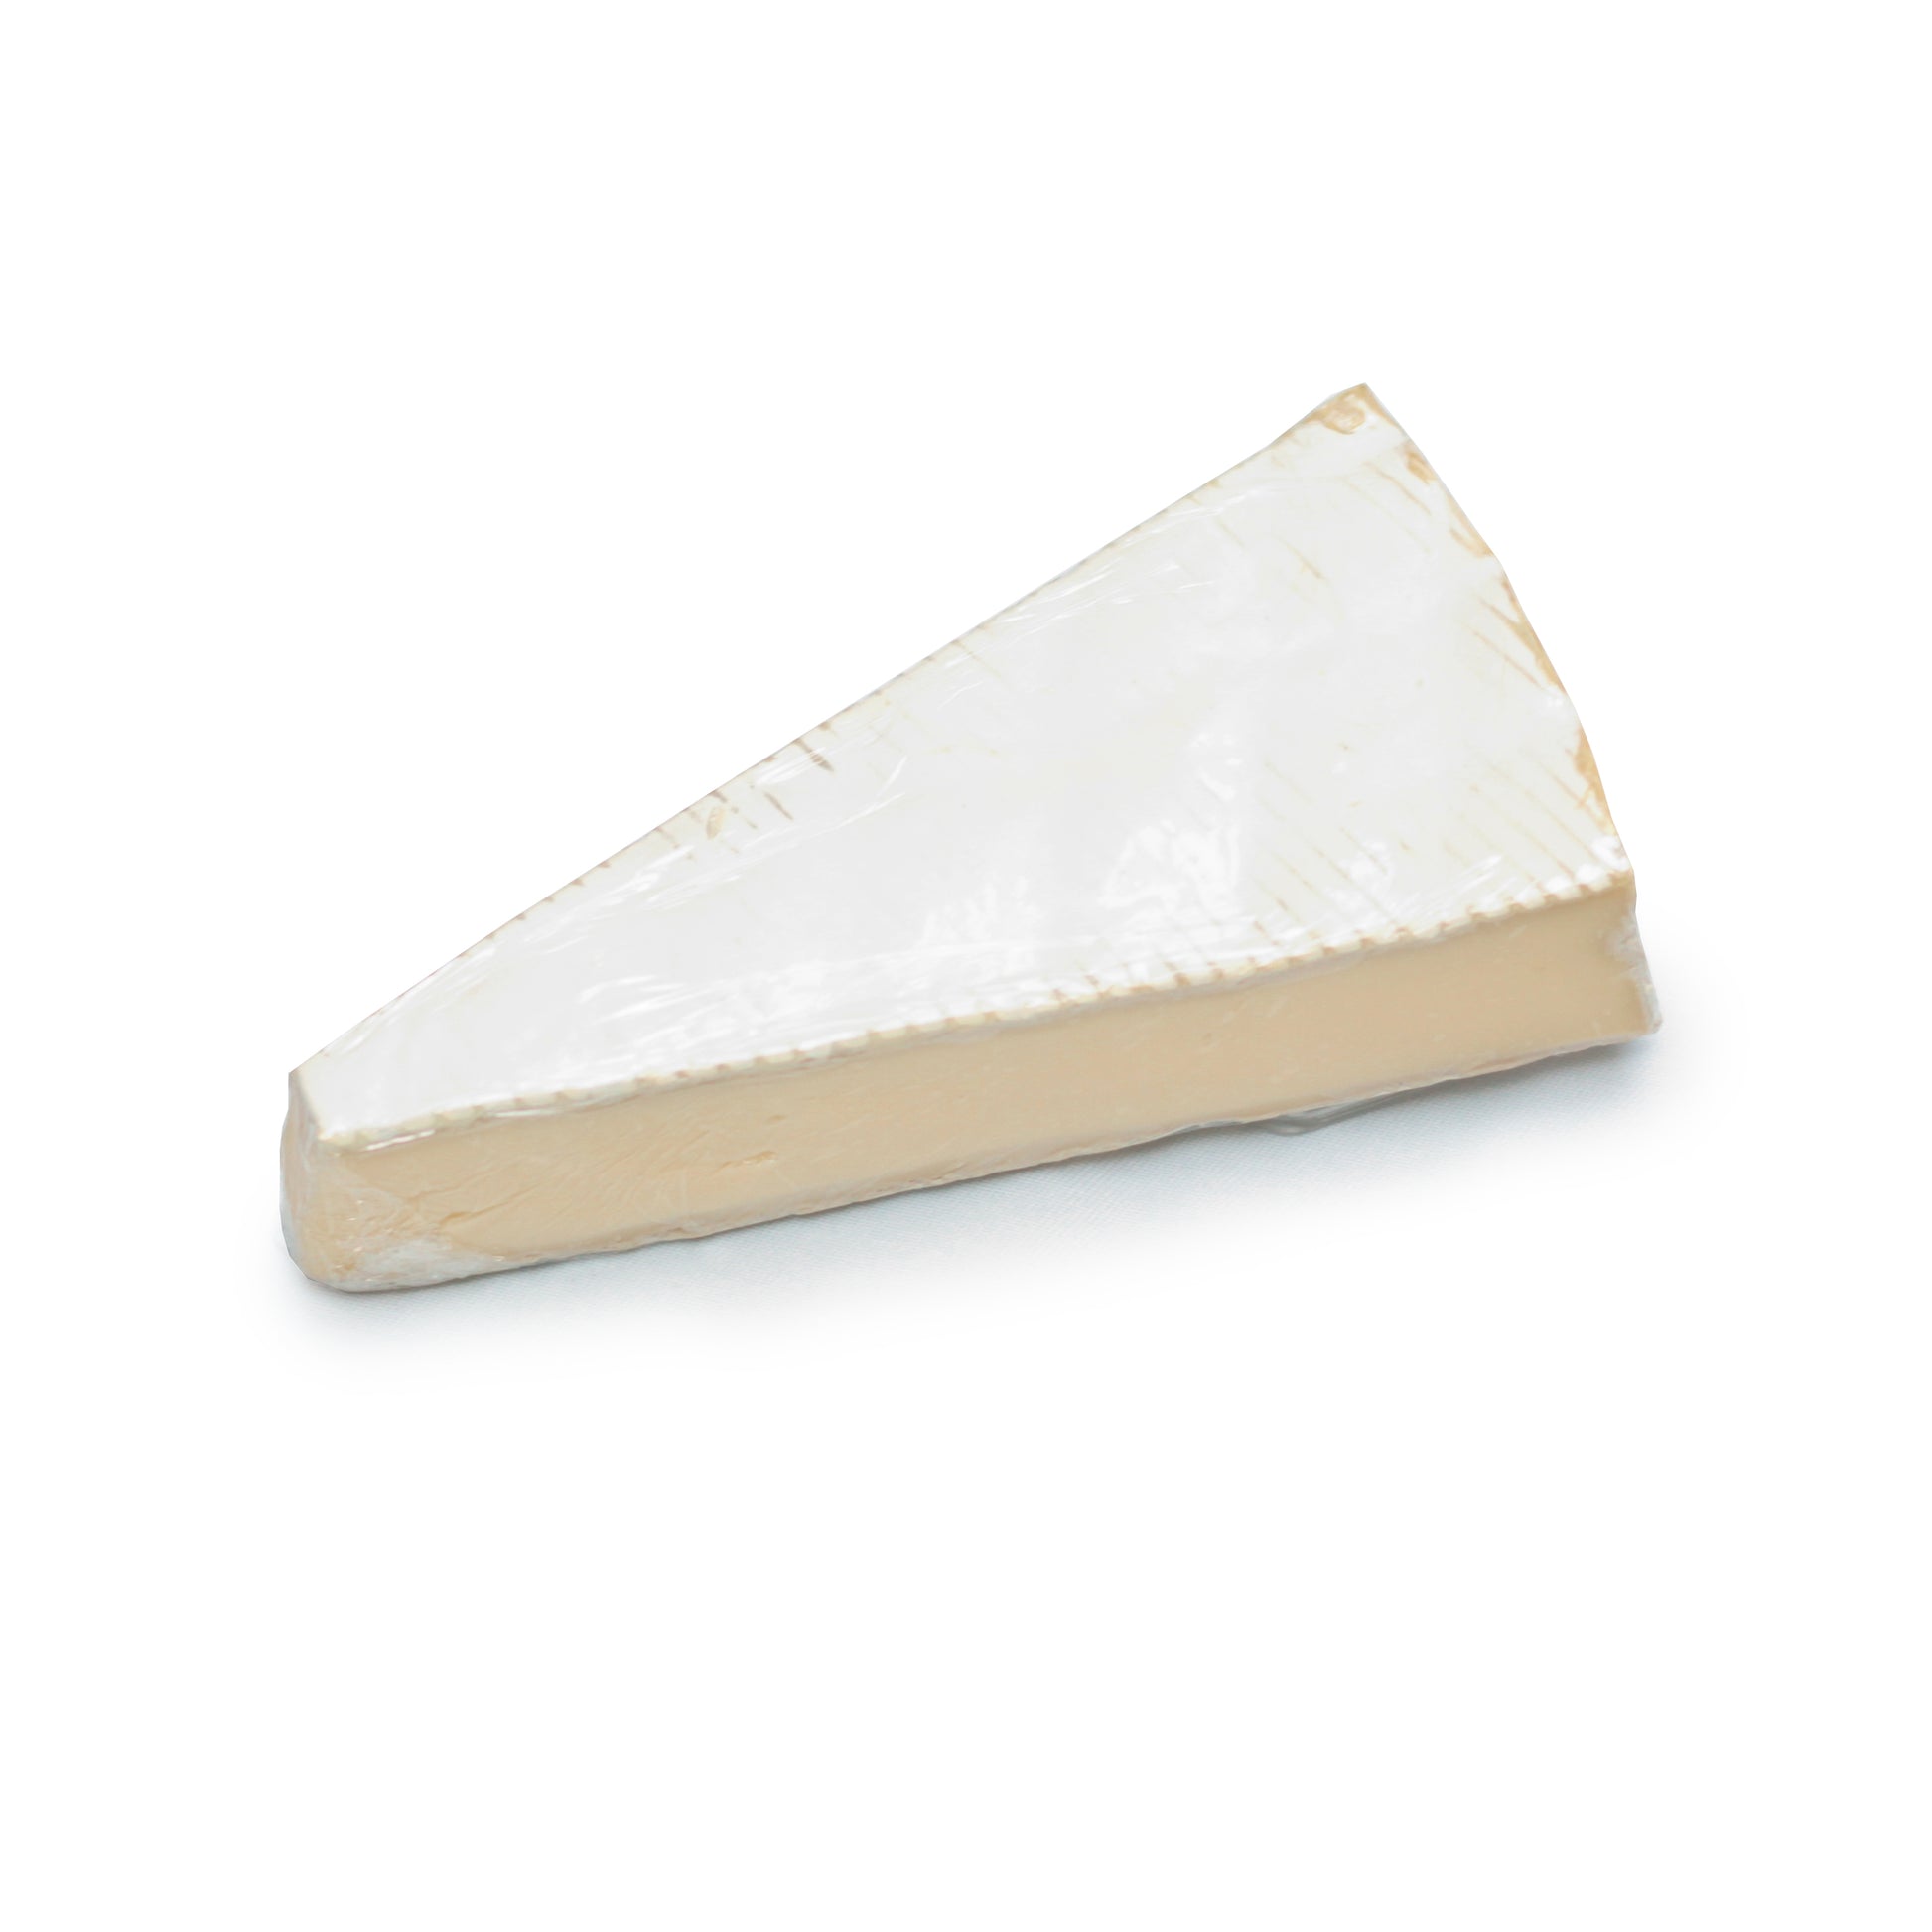 queso Brie en un fondo blanco